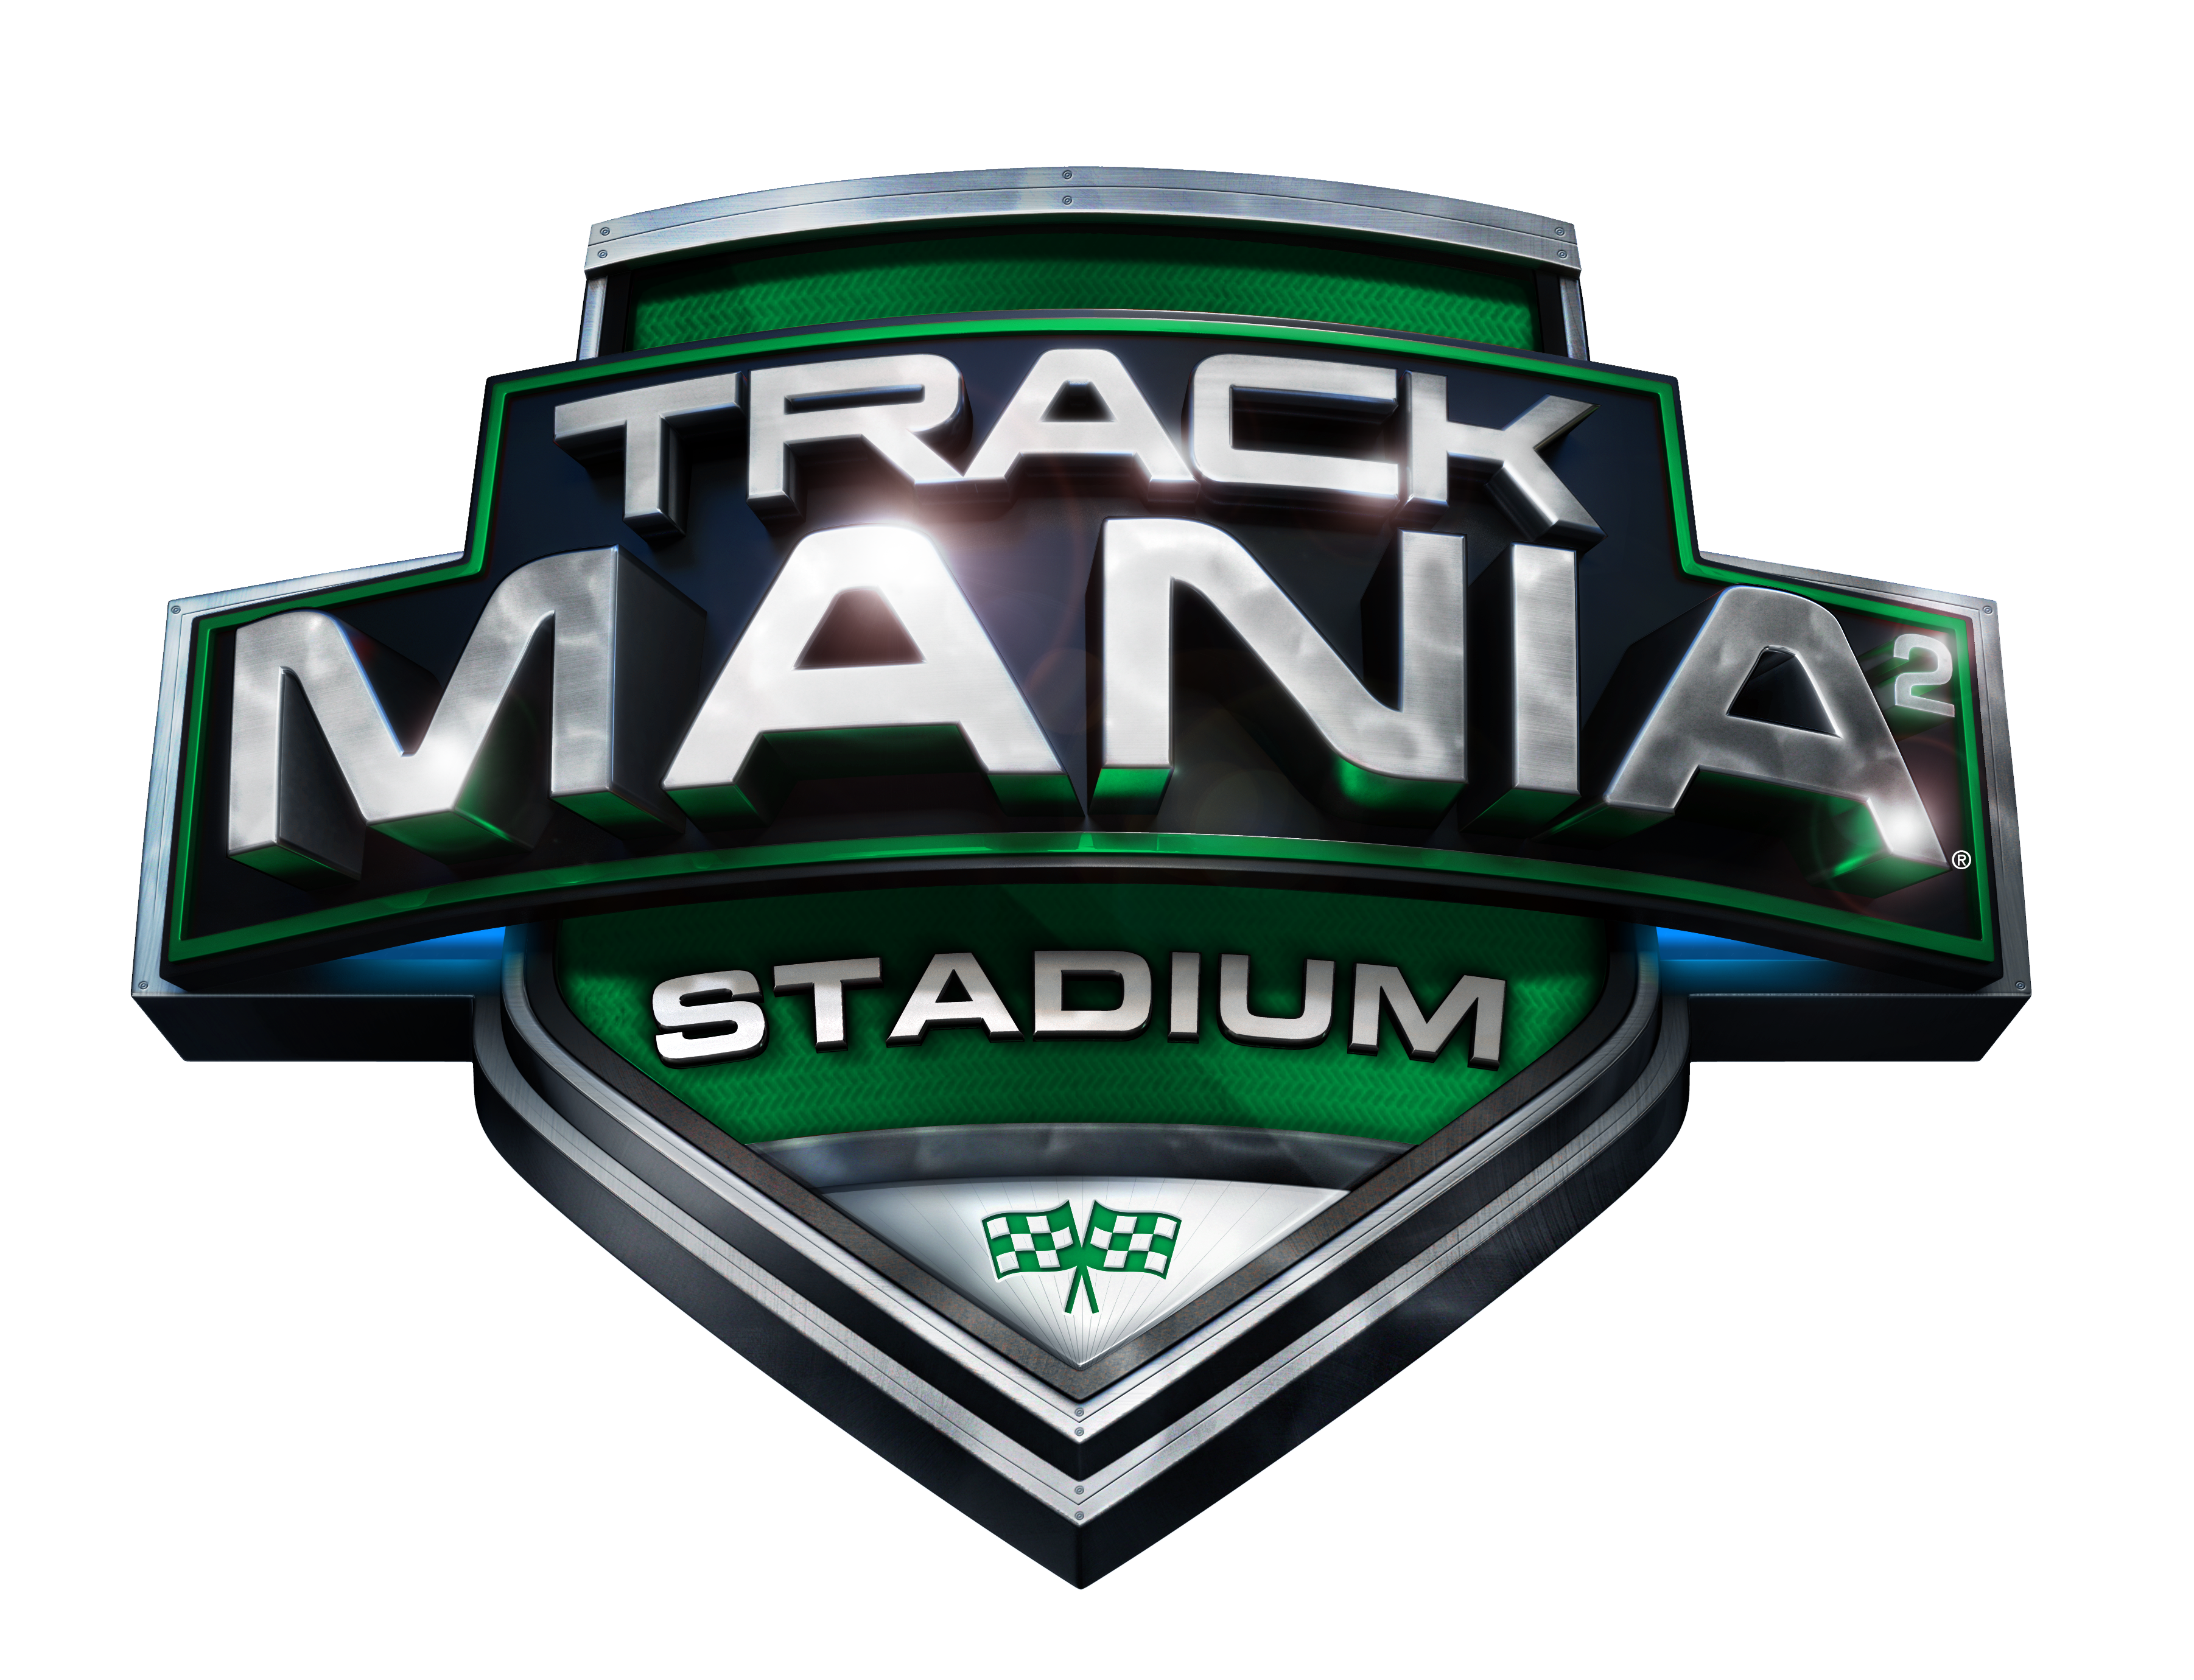 trackmania 2 stadium pc